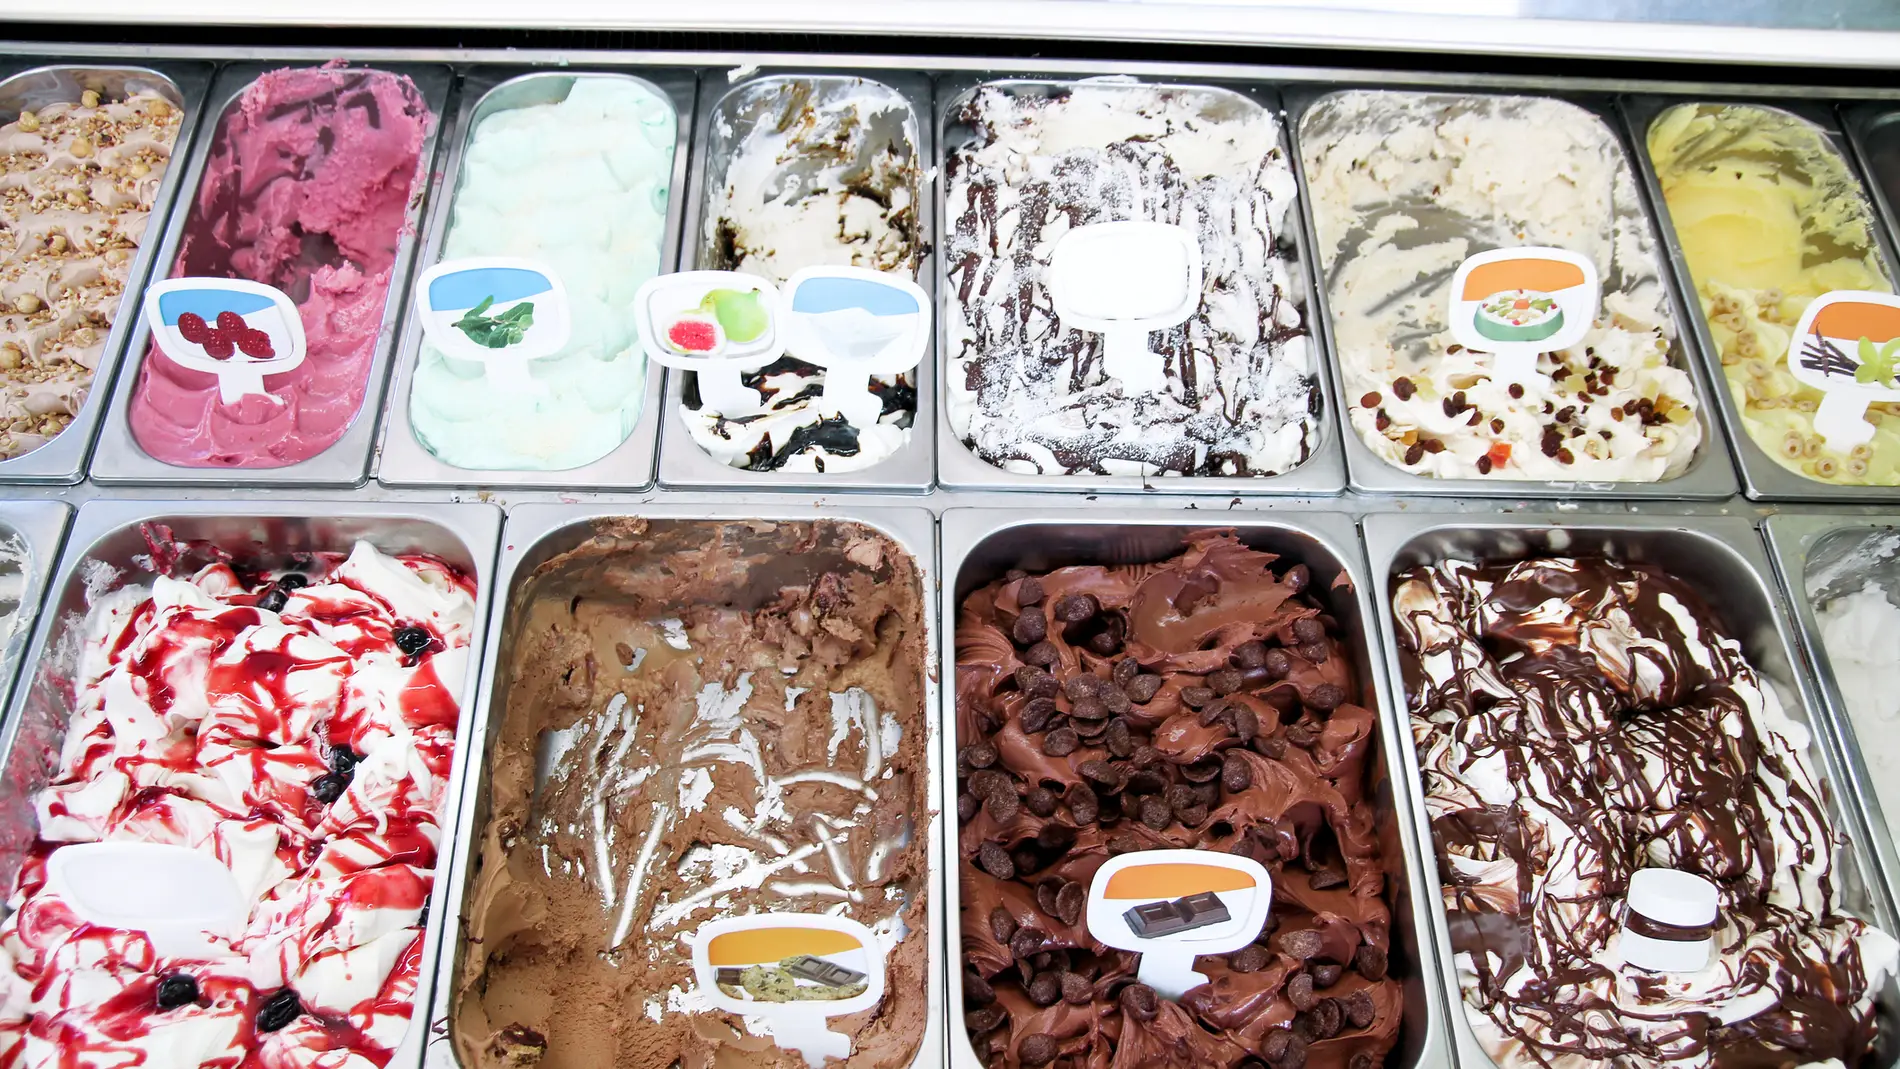 Imagen de helados artesanales en una heladería